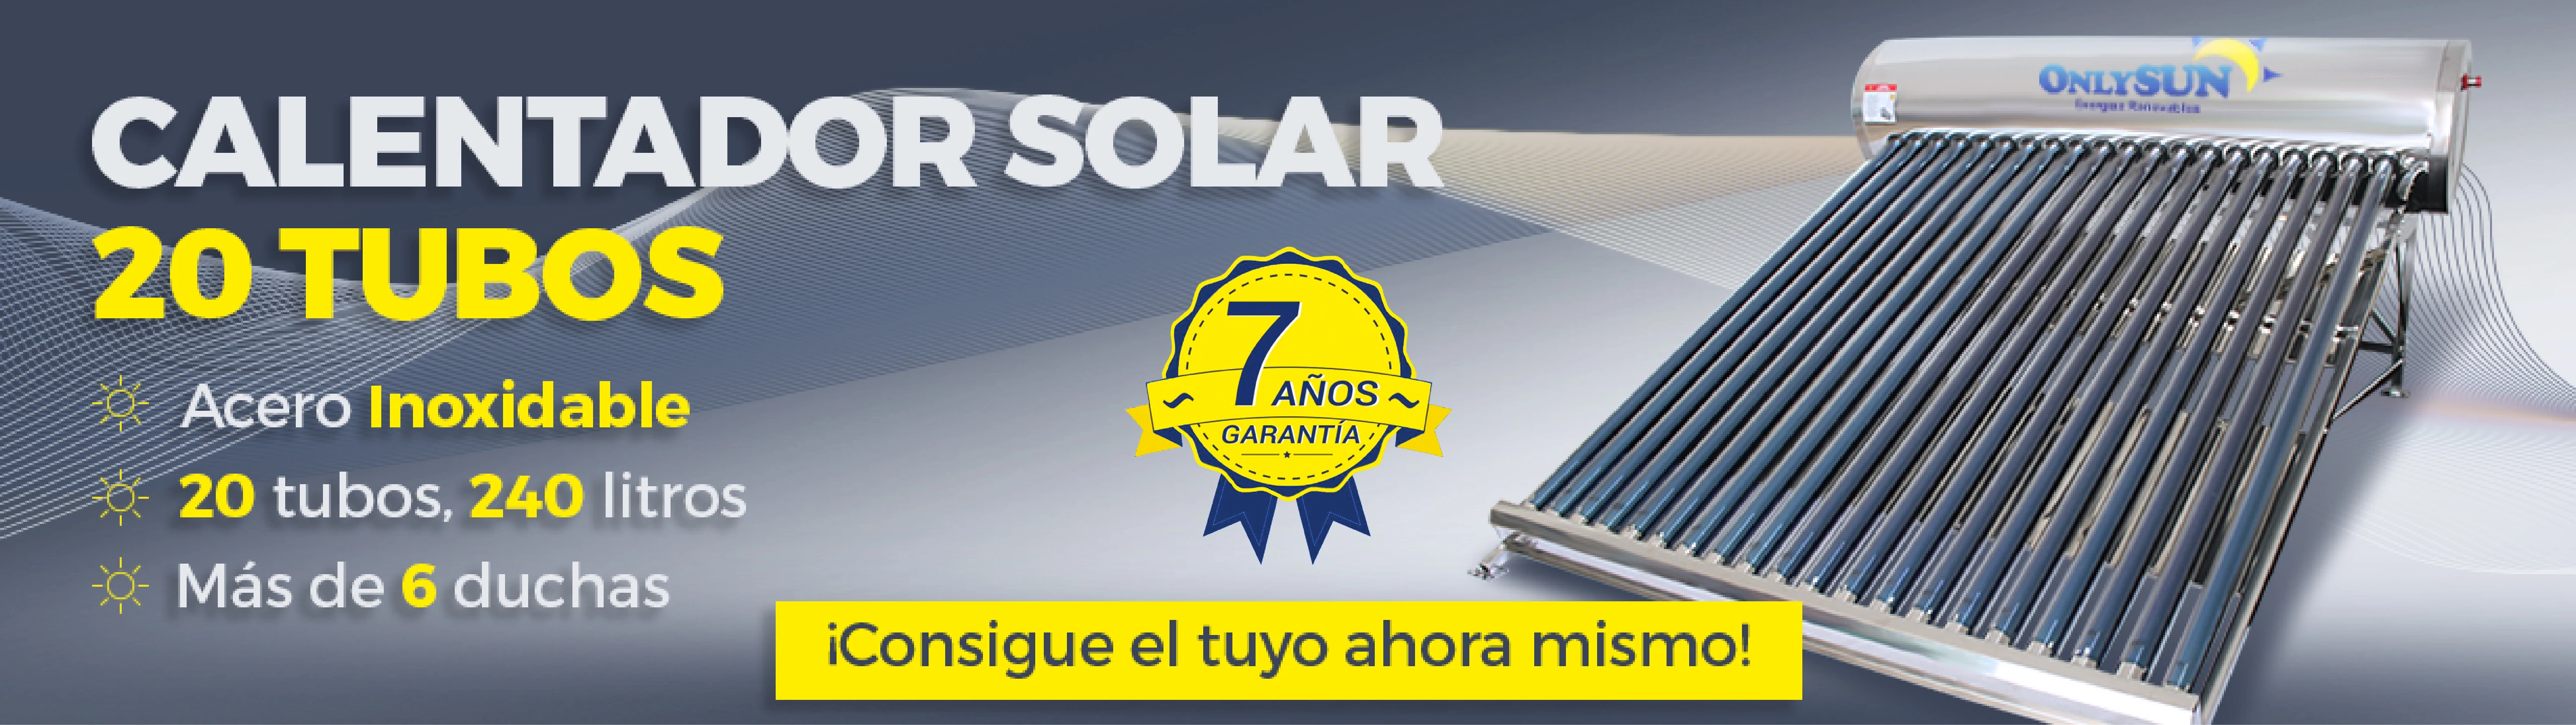 Calentador Solar Garantia 10 años